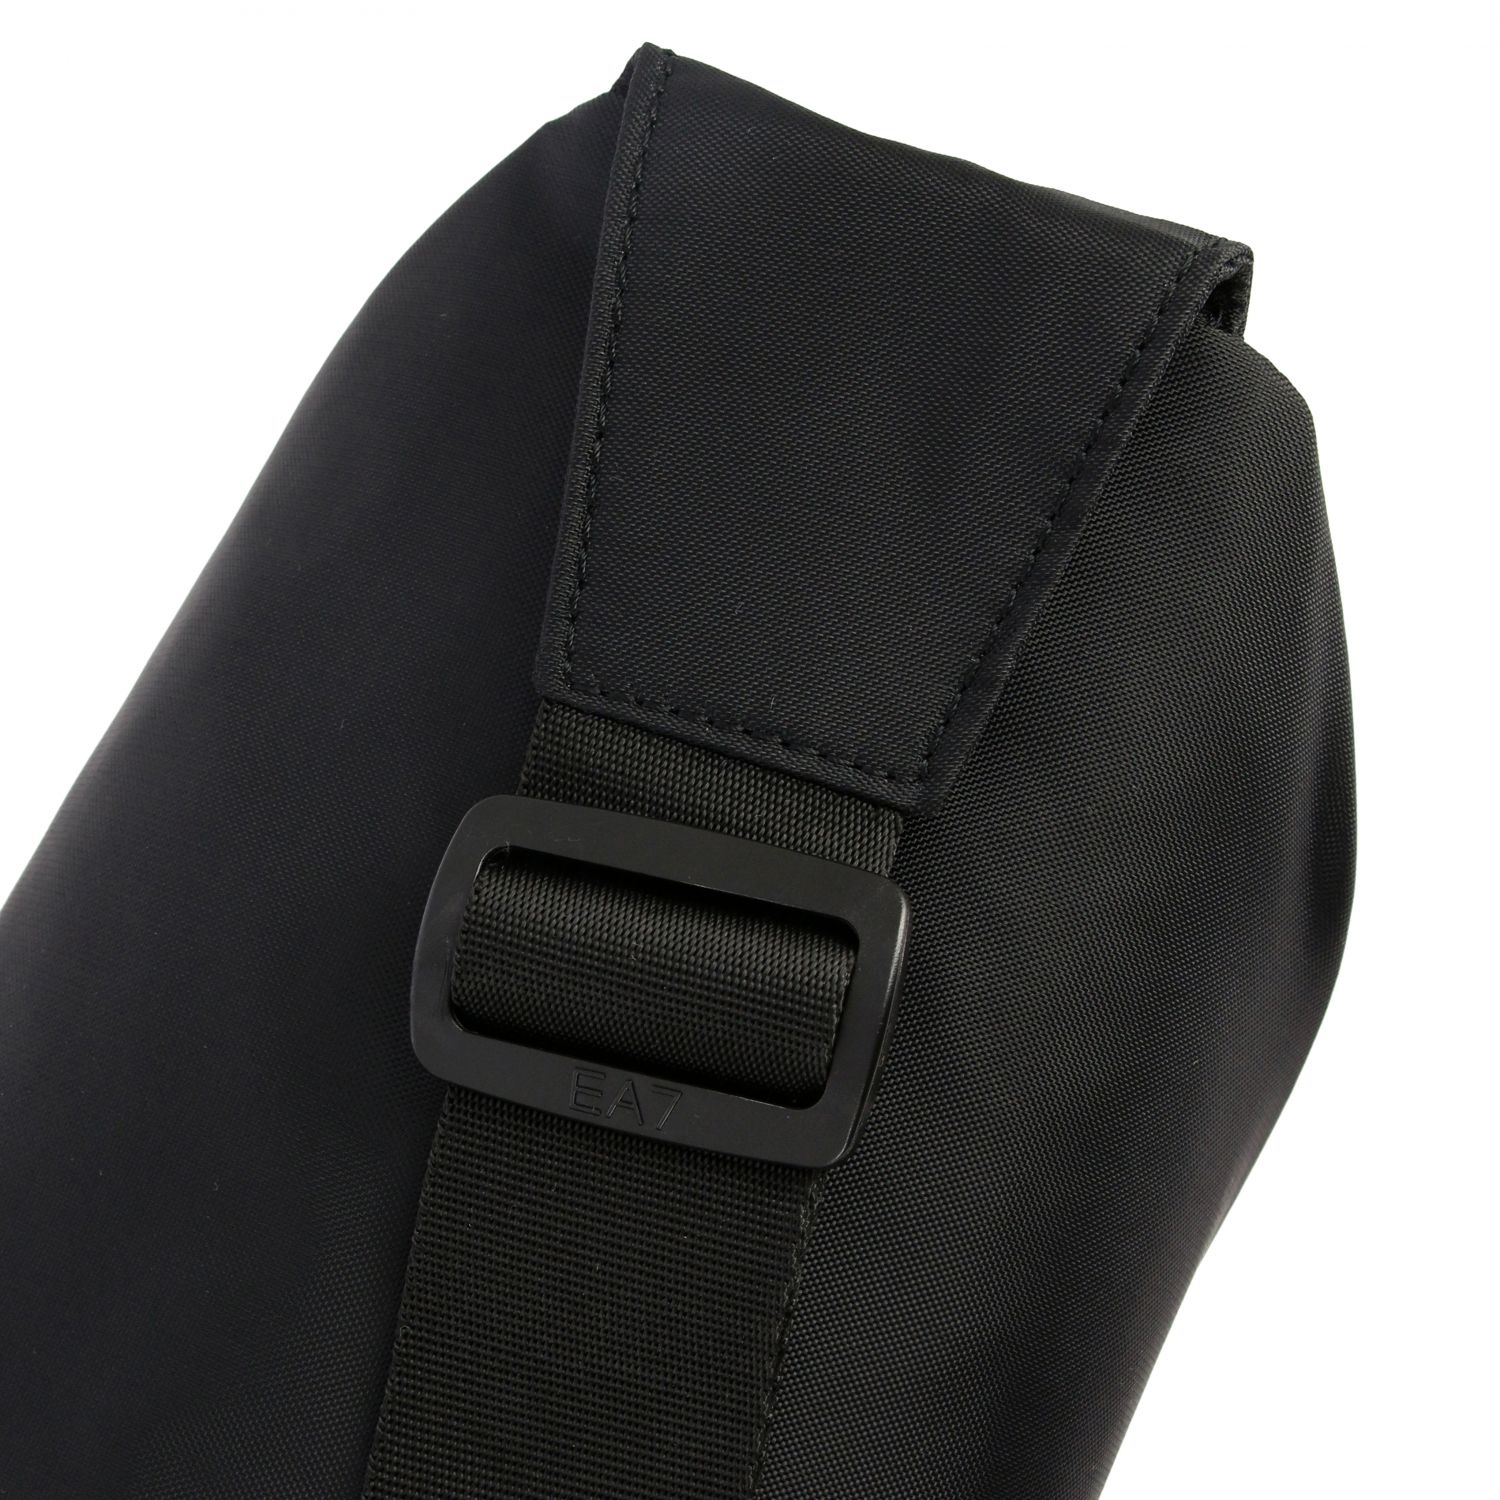 Ea7 Outlet: belt bag for men - Black | Ea7 belt bag 275878 9A802 online ...